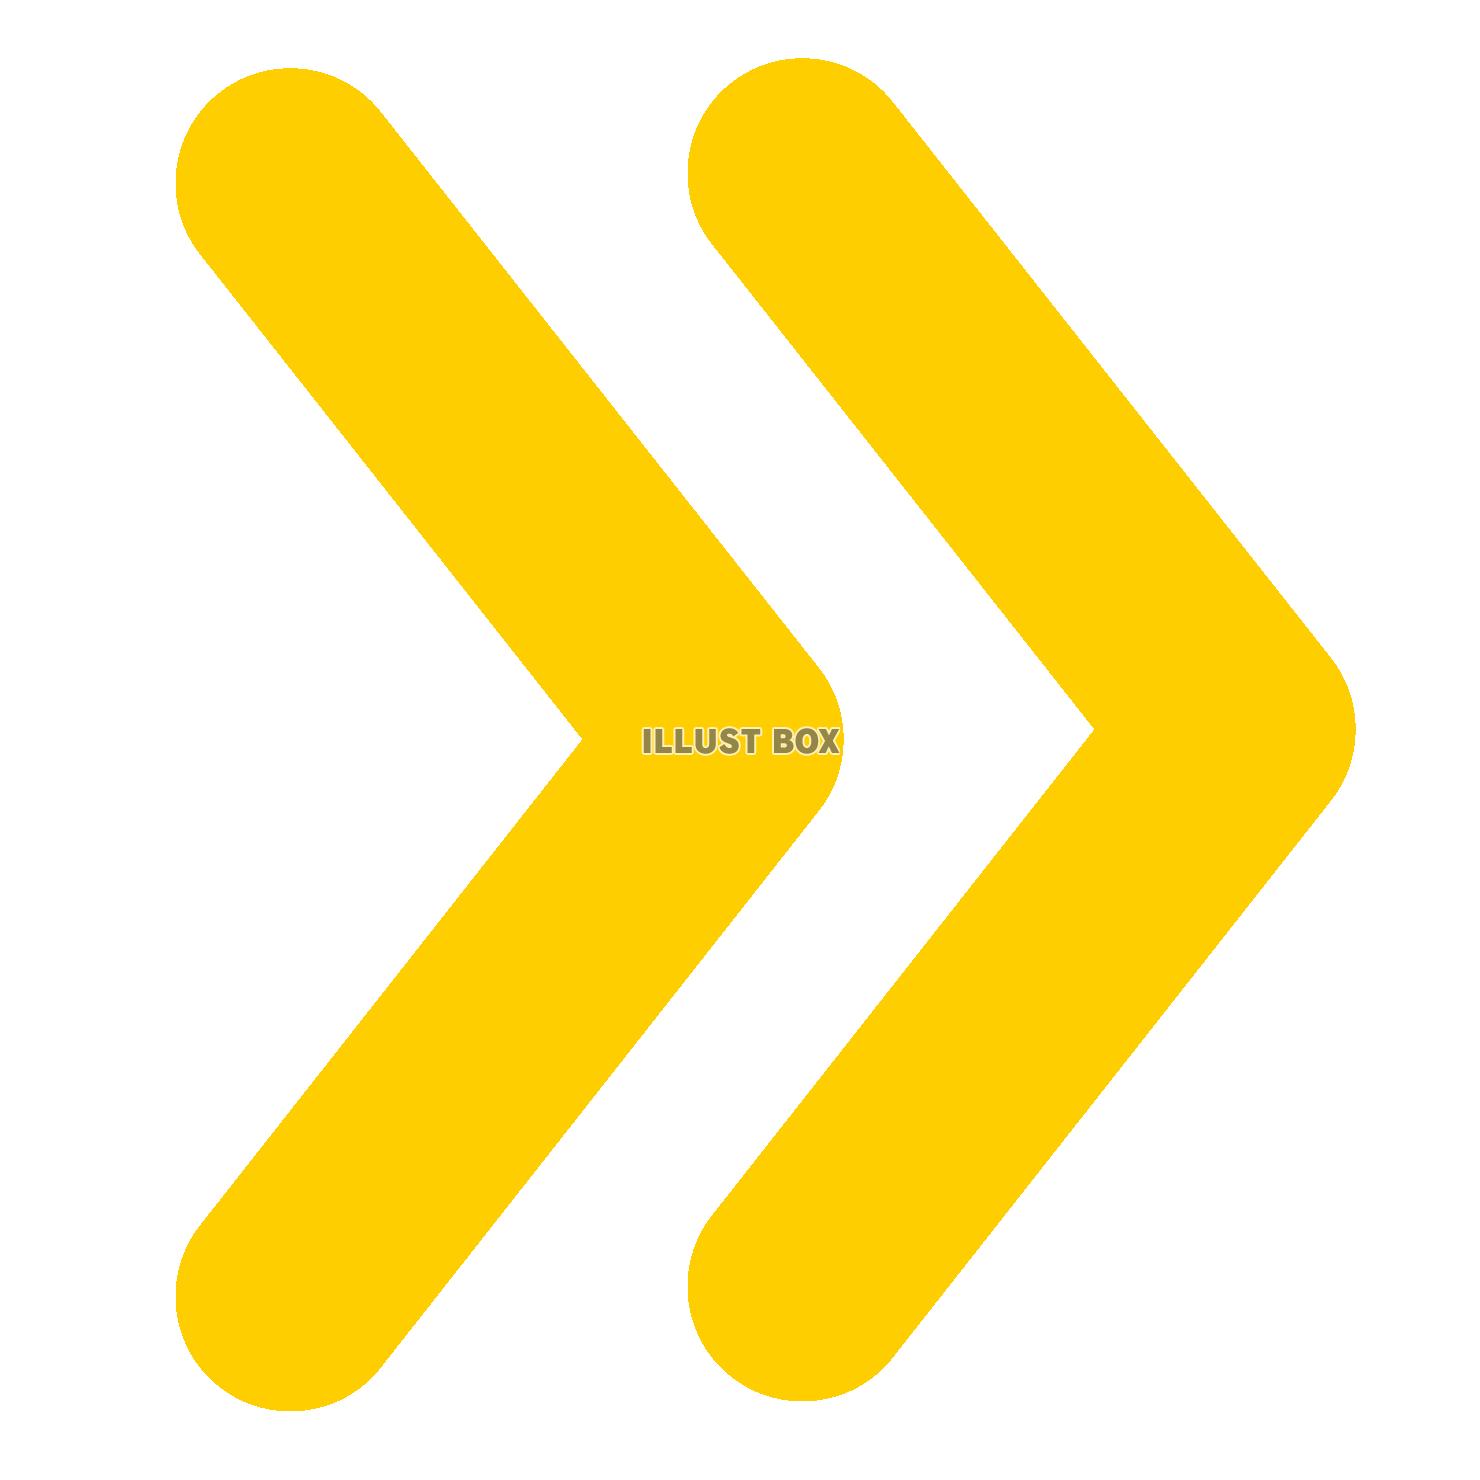 シンプルな黄色の二本線の矢印のマーク